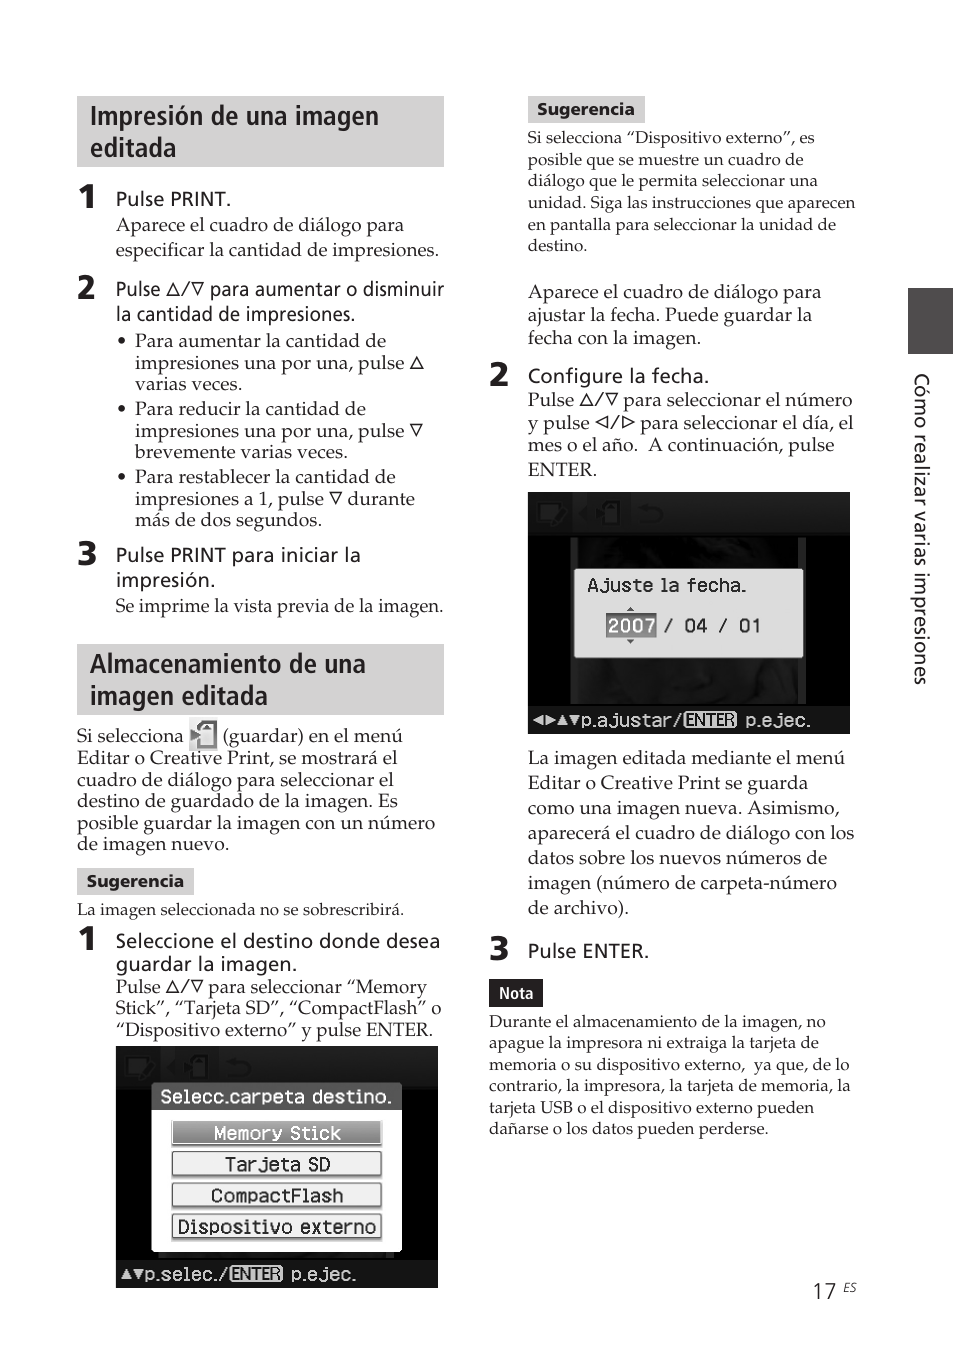 Impresión de una imagen editada, Almacenamiento de una imagen editada | Sony DPP-FP70 Manual del usuario | Página 17 / 84